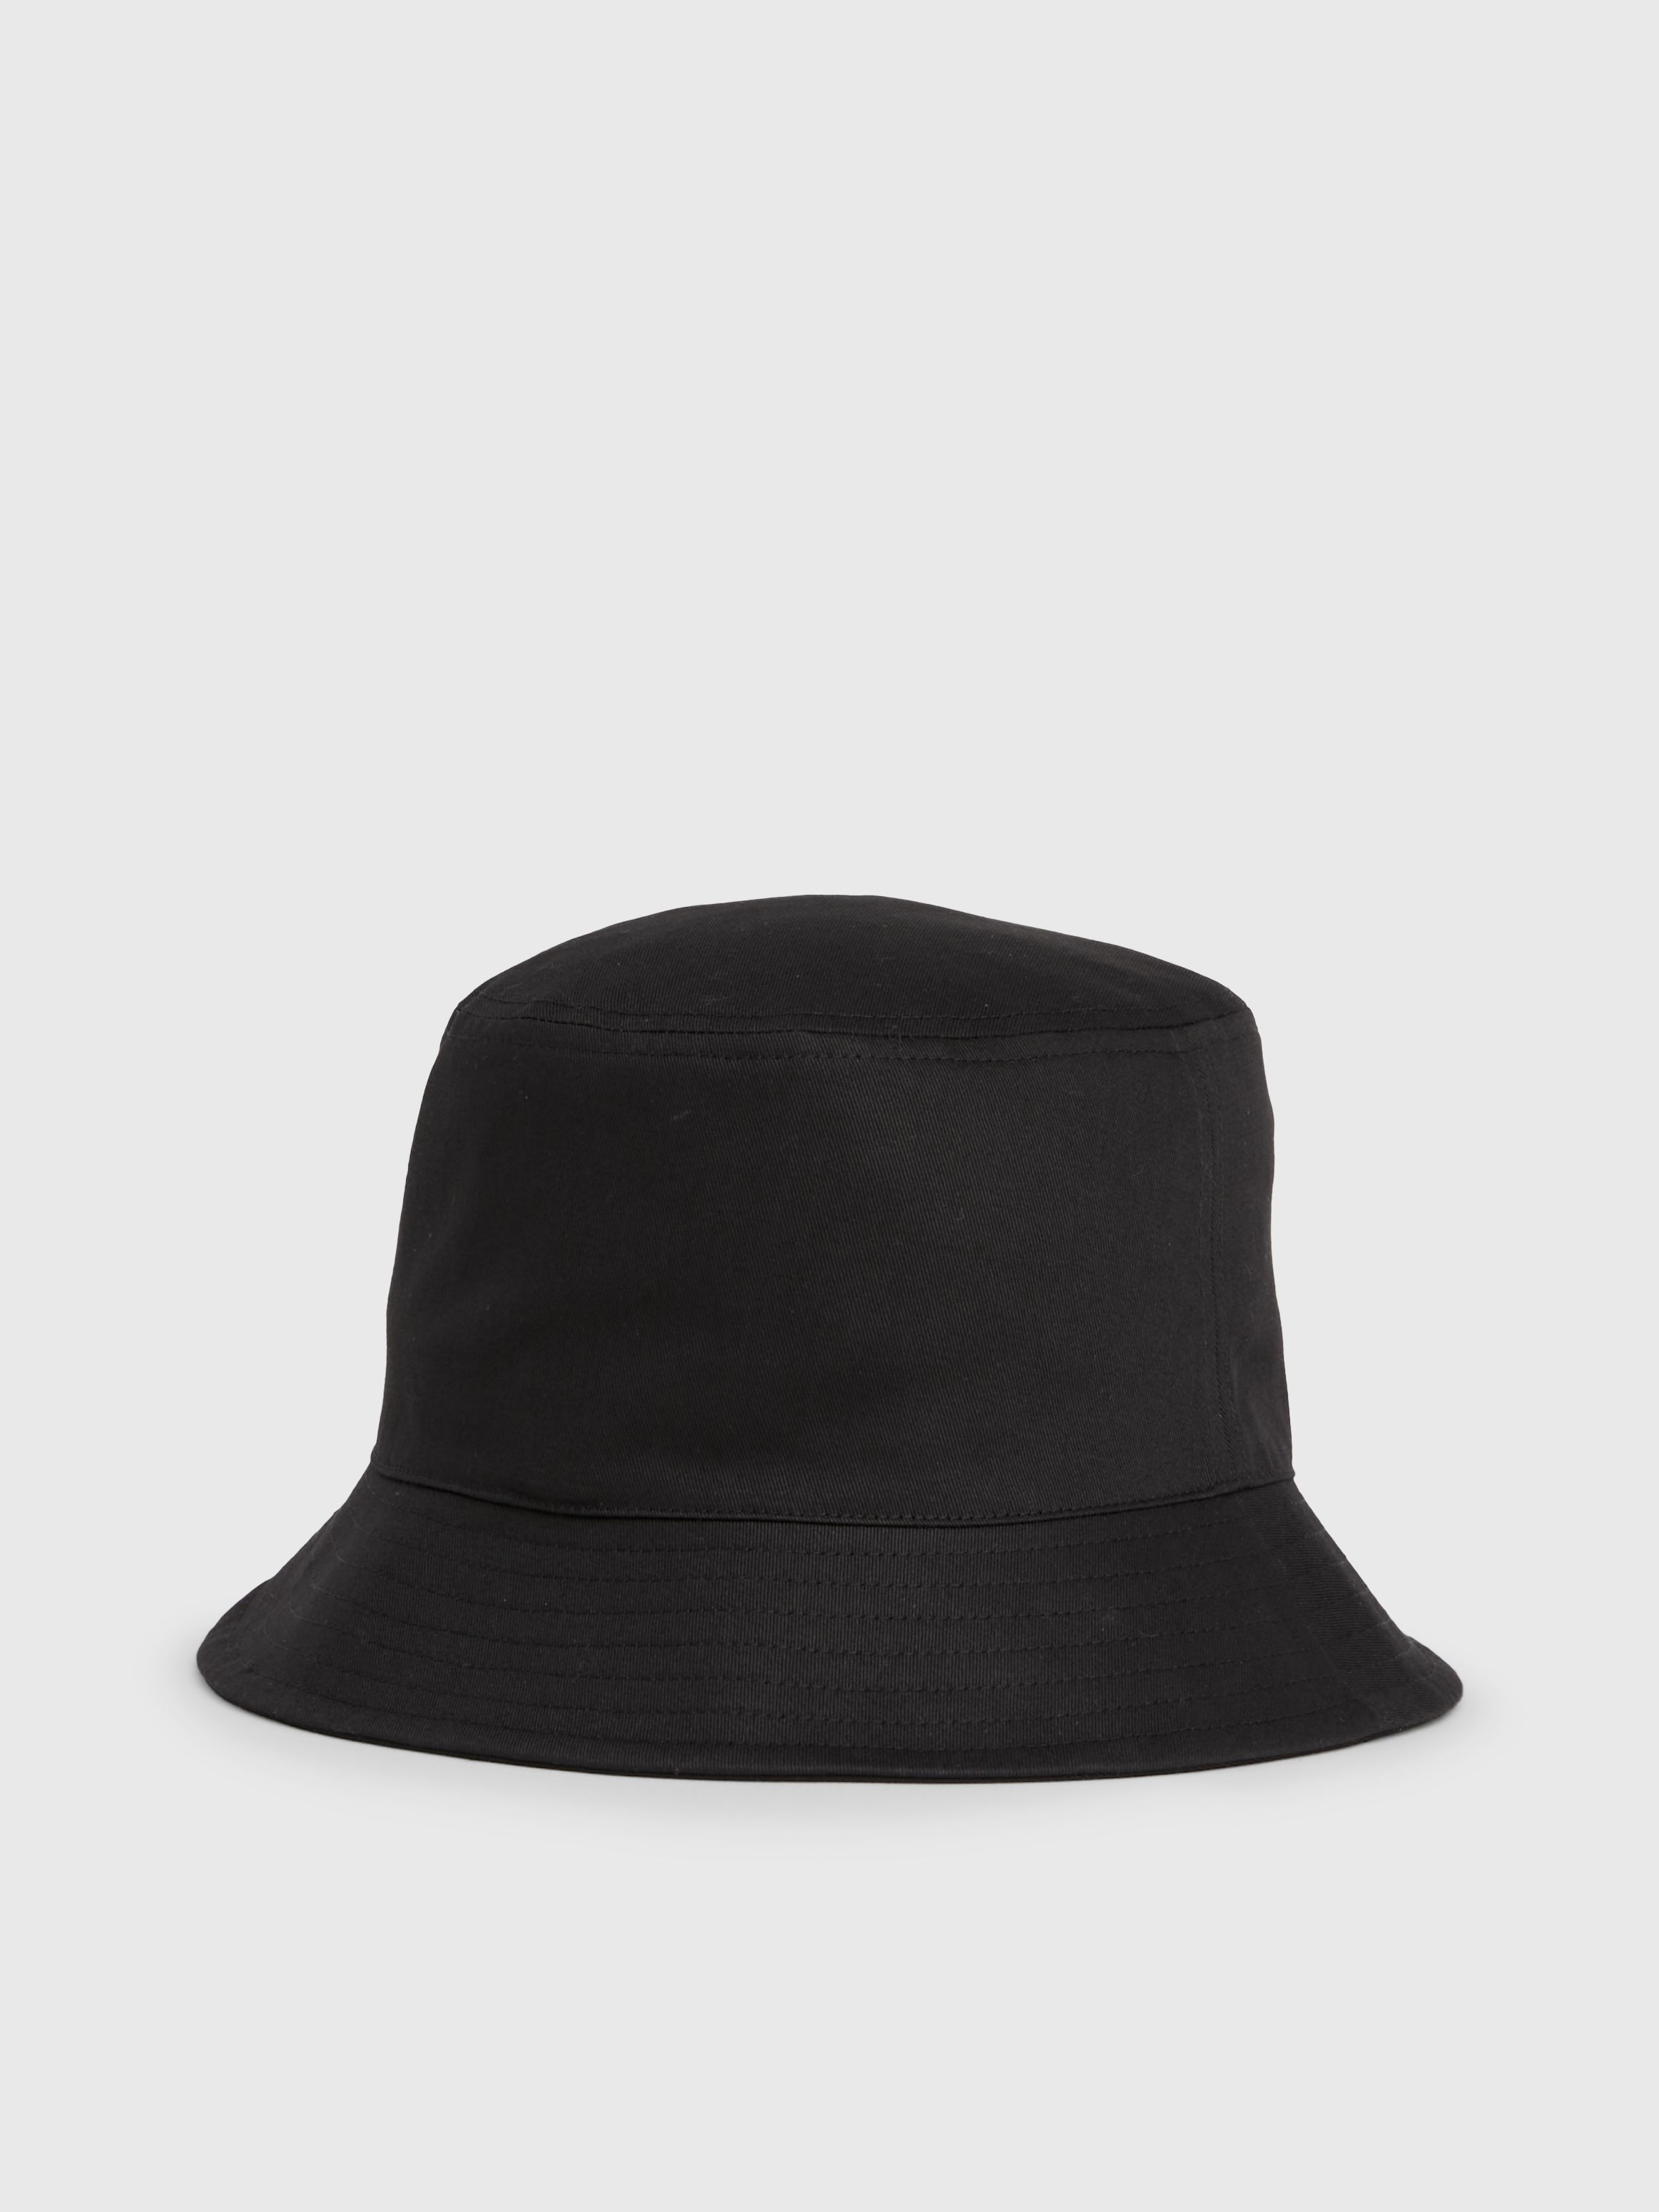 Calvin Klein Jeans Twill Bucket Hat